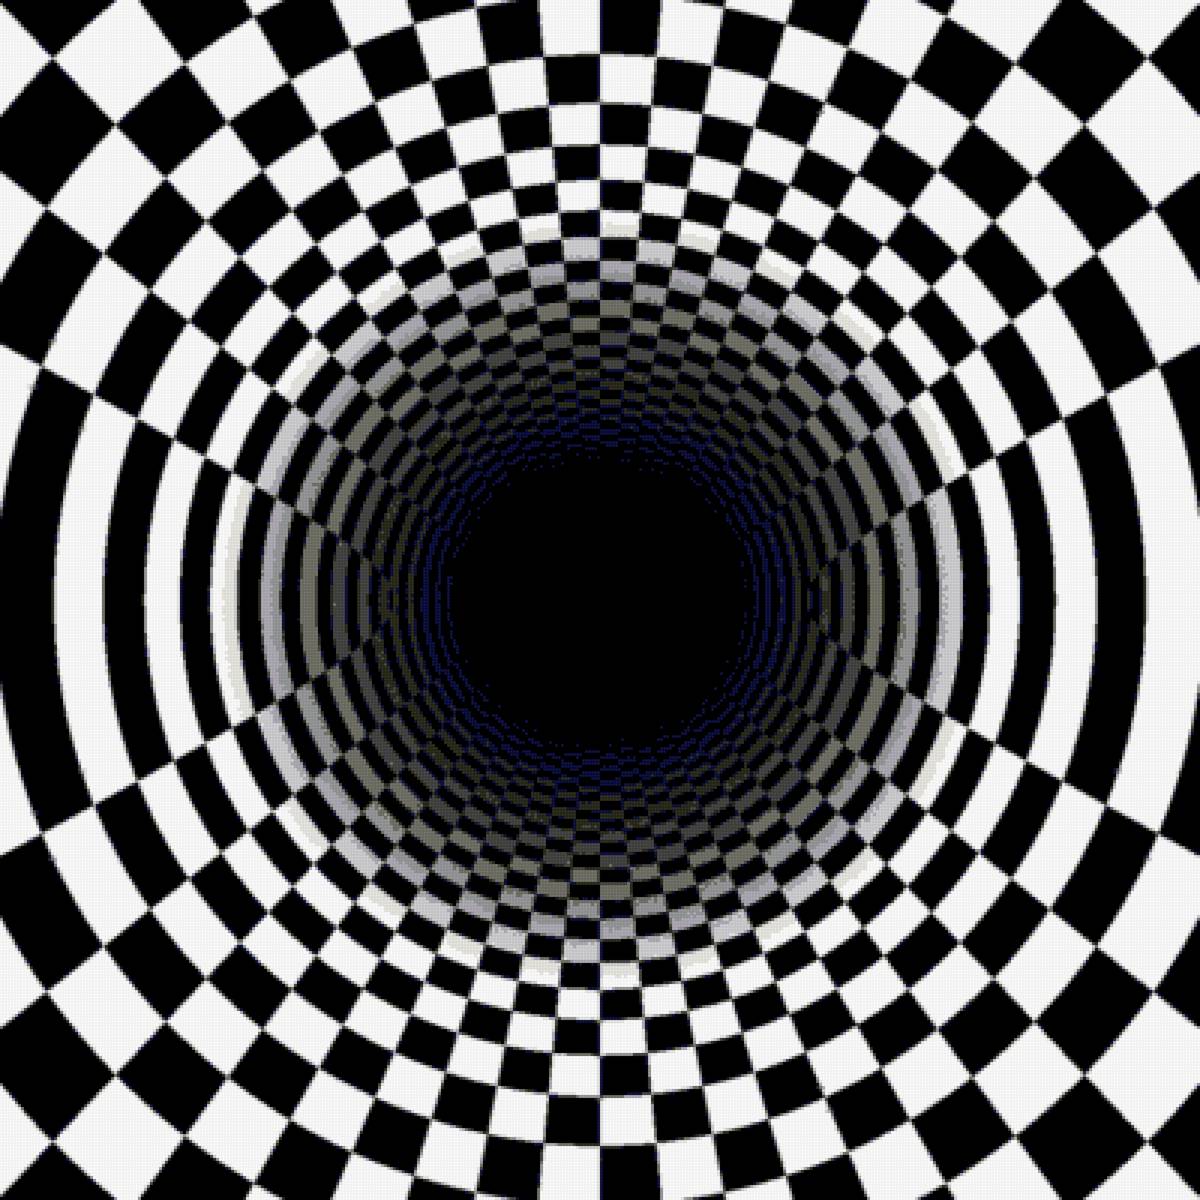 Движущиеся картинки для глаз. Оптические иллюзии. Оптические иллюзии движения. Визуальные иллюзии. Оптические иллюзии для глаз.